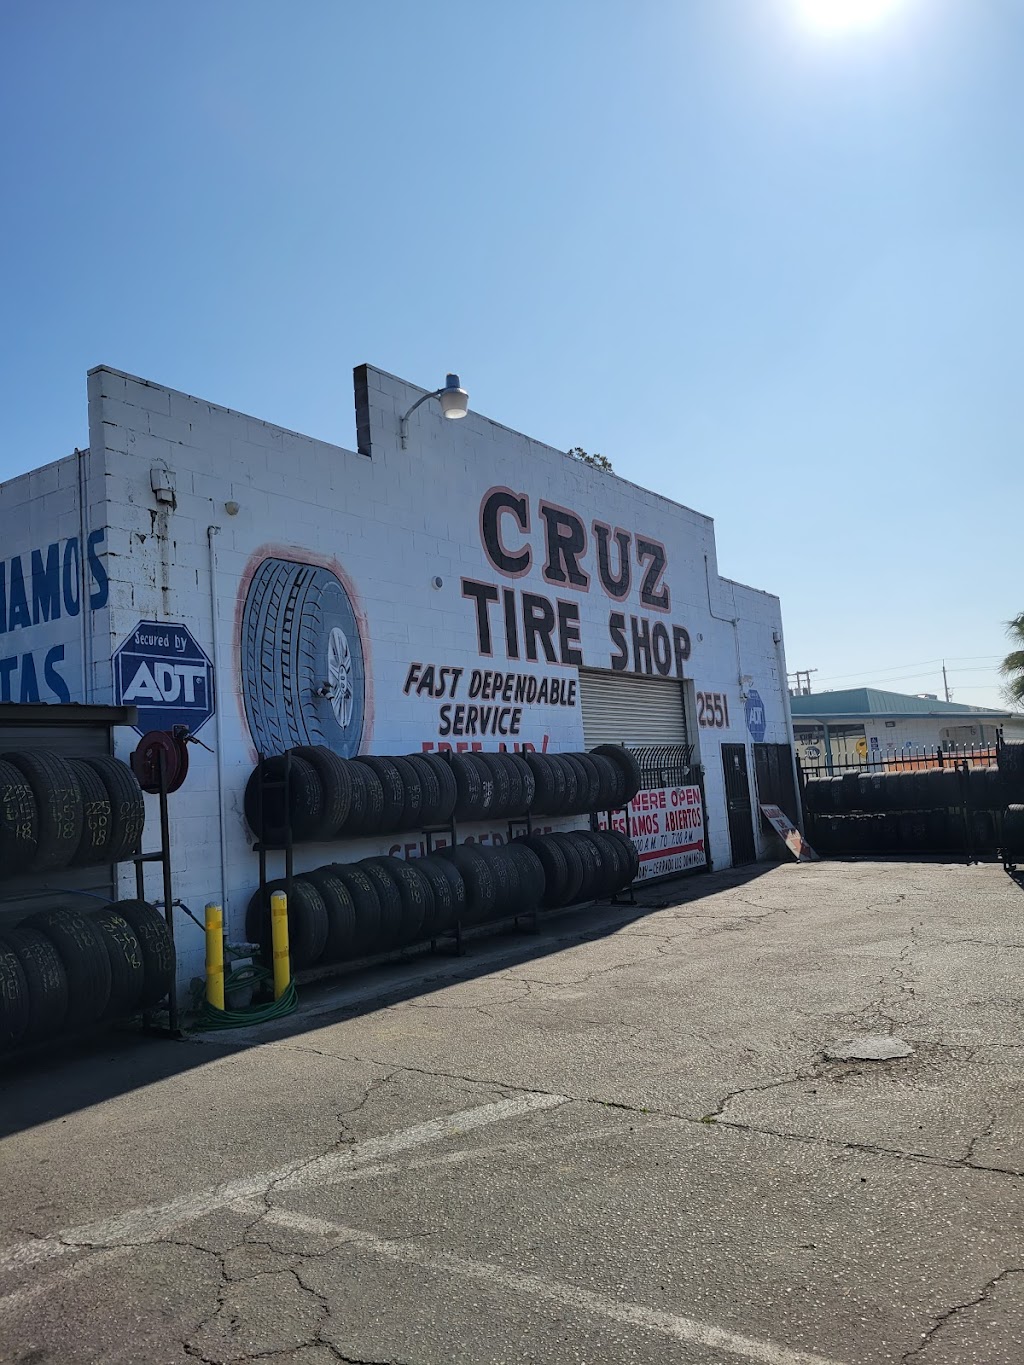 Cruz Tire Shop | 2551 S Elm Ave, Fresno, CA 93706, USA | Phone: (559) 494-0534